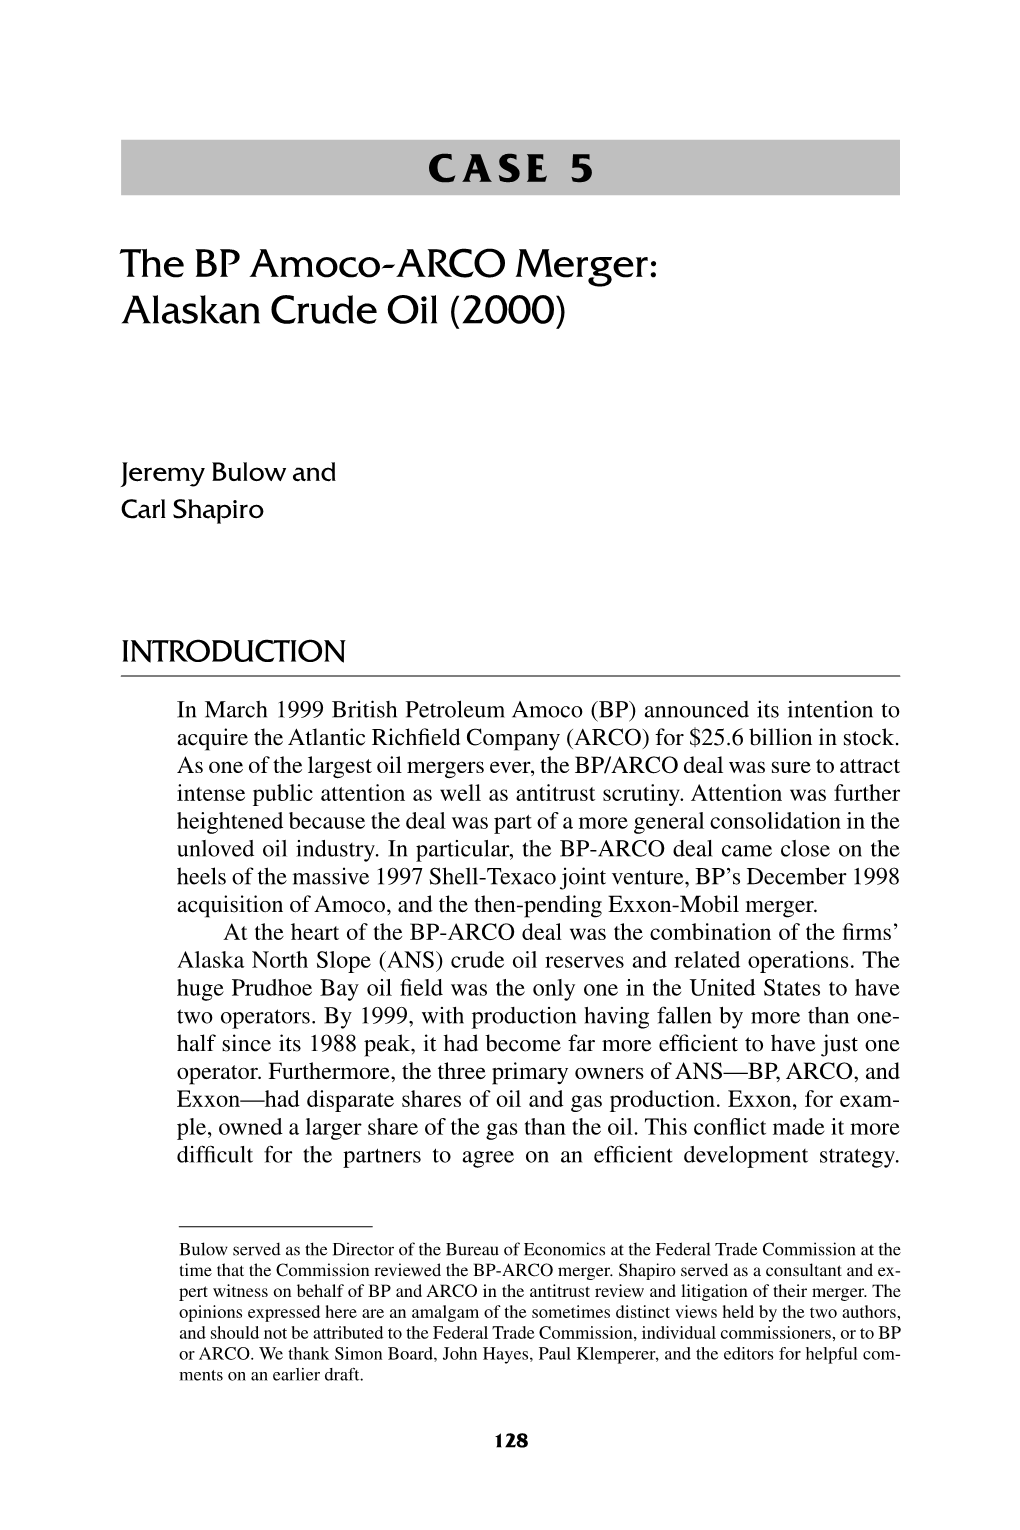 CASE 5 the BP Amoco-ARCO Merger: Alaskan Crude Oil (2000)